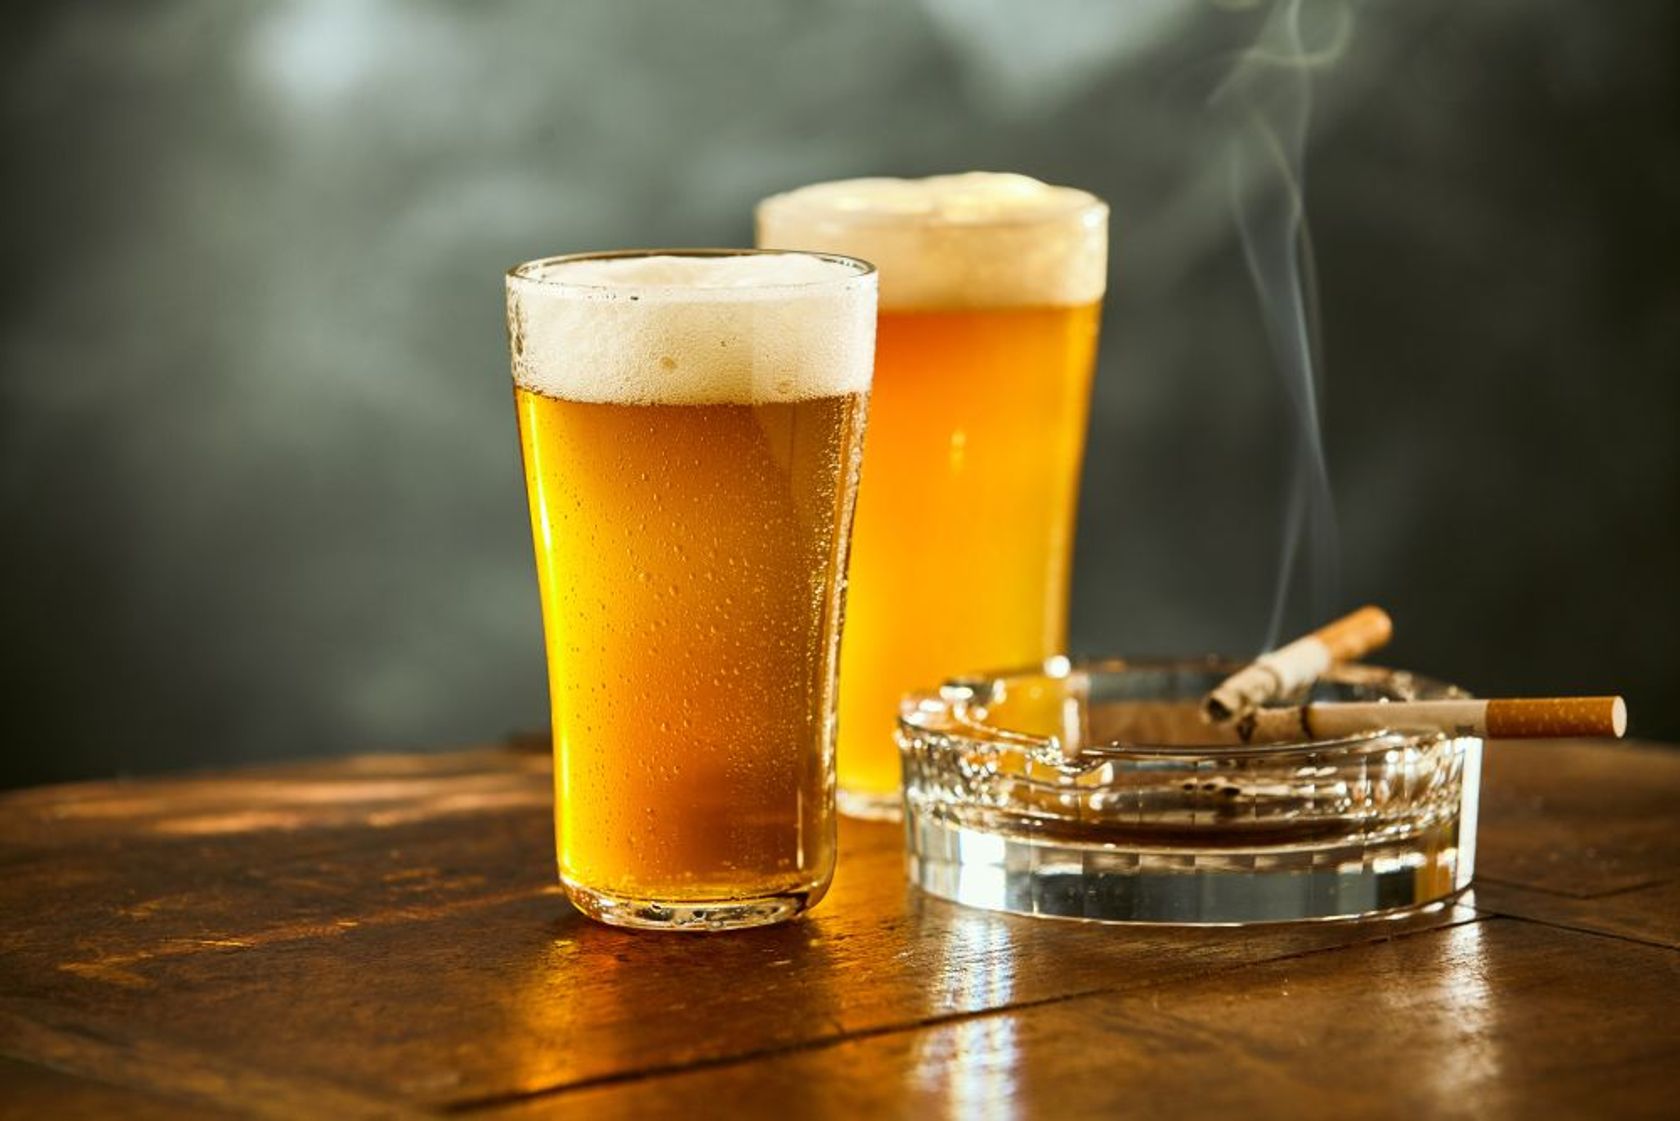 Zwei volle Biergläser und zwei brennende Zigaretten im Aschenbecher auf einem Tisch.